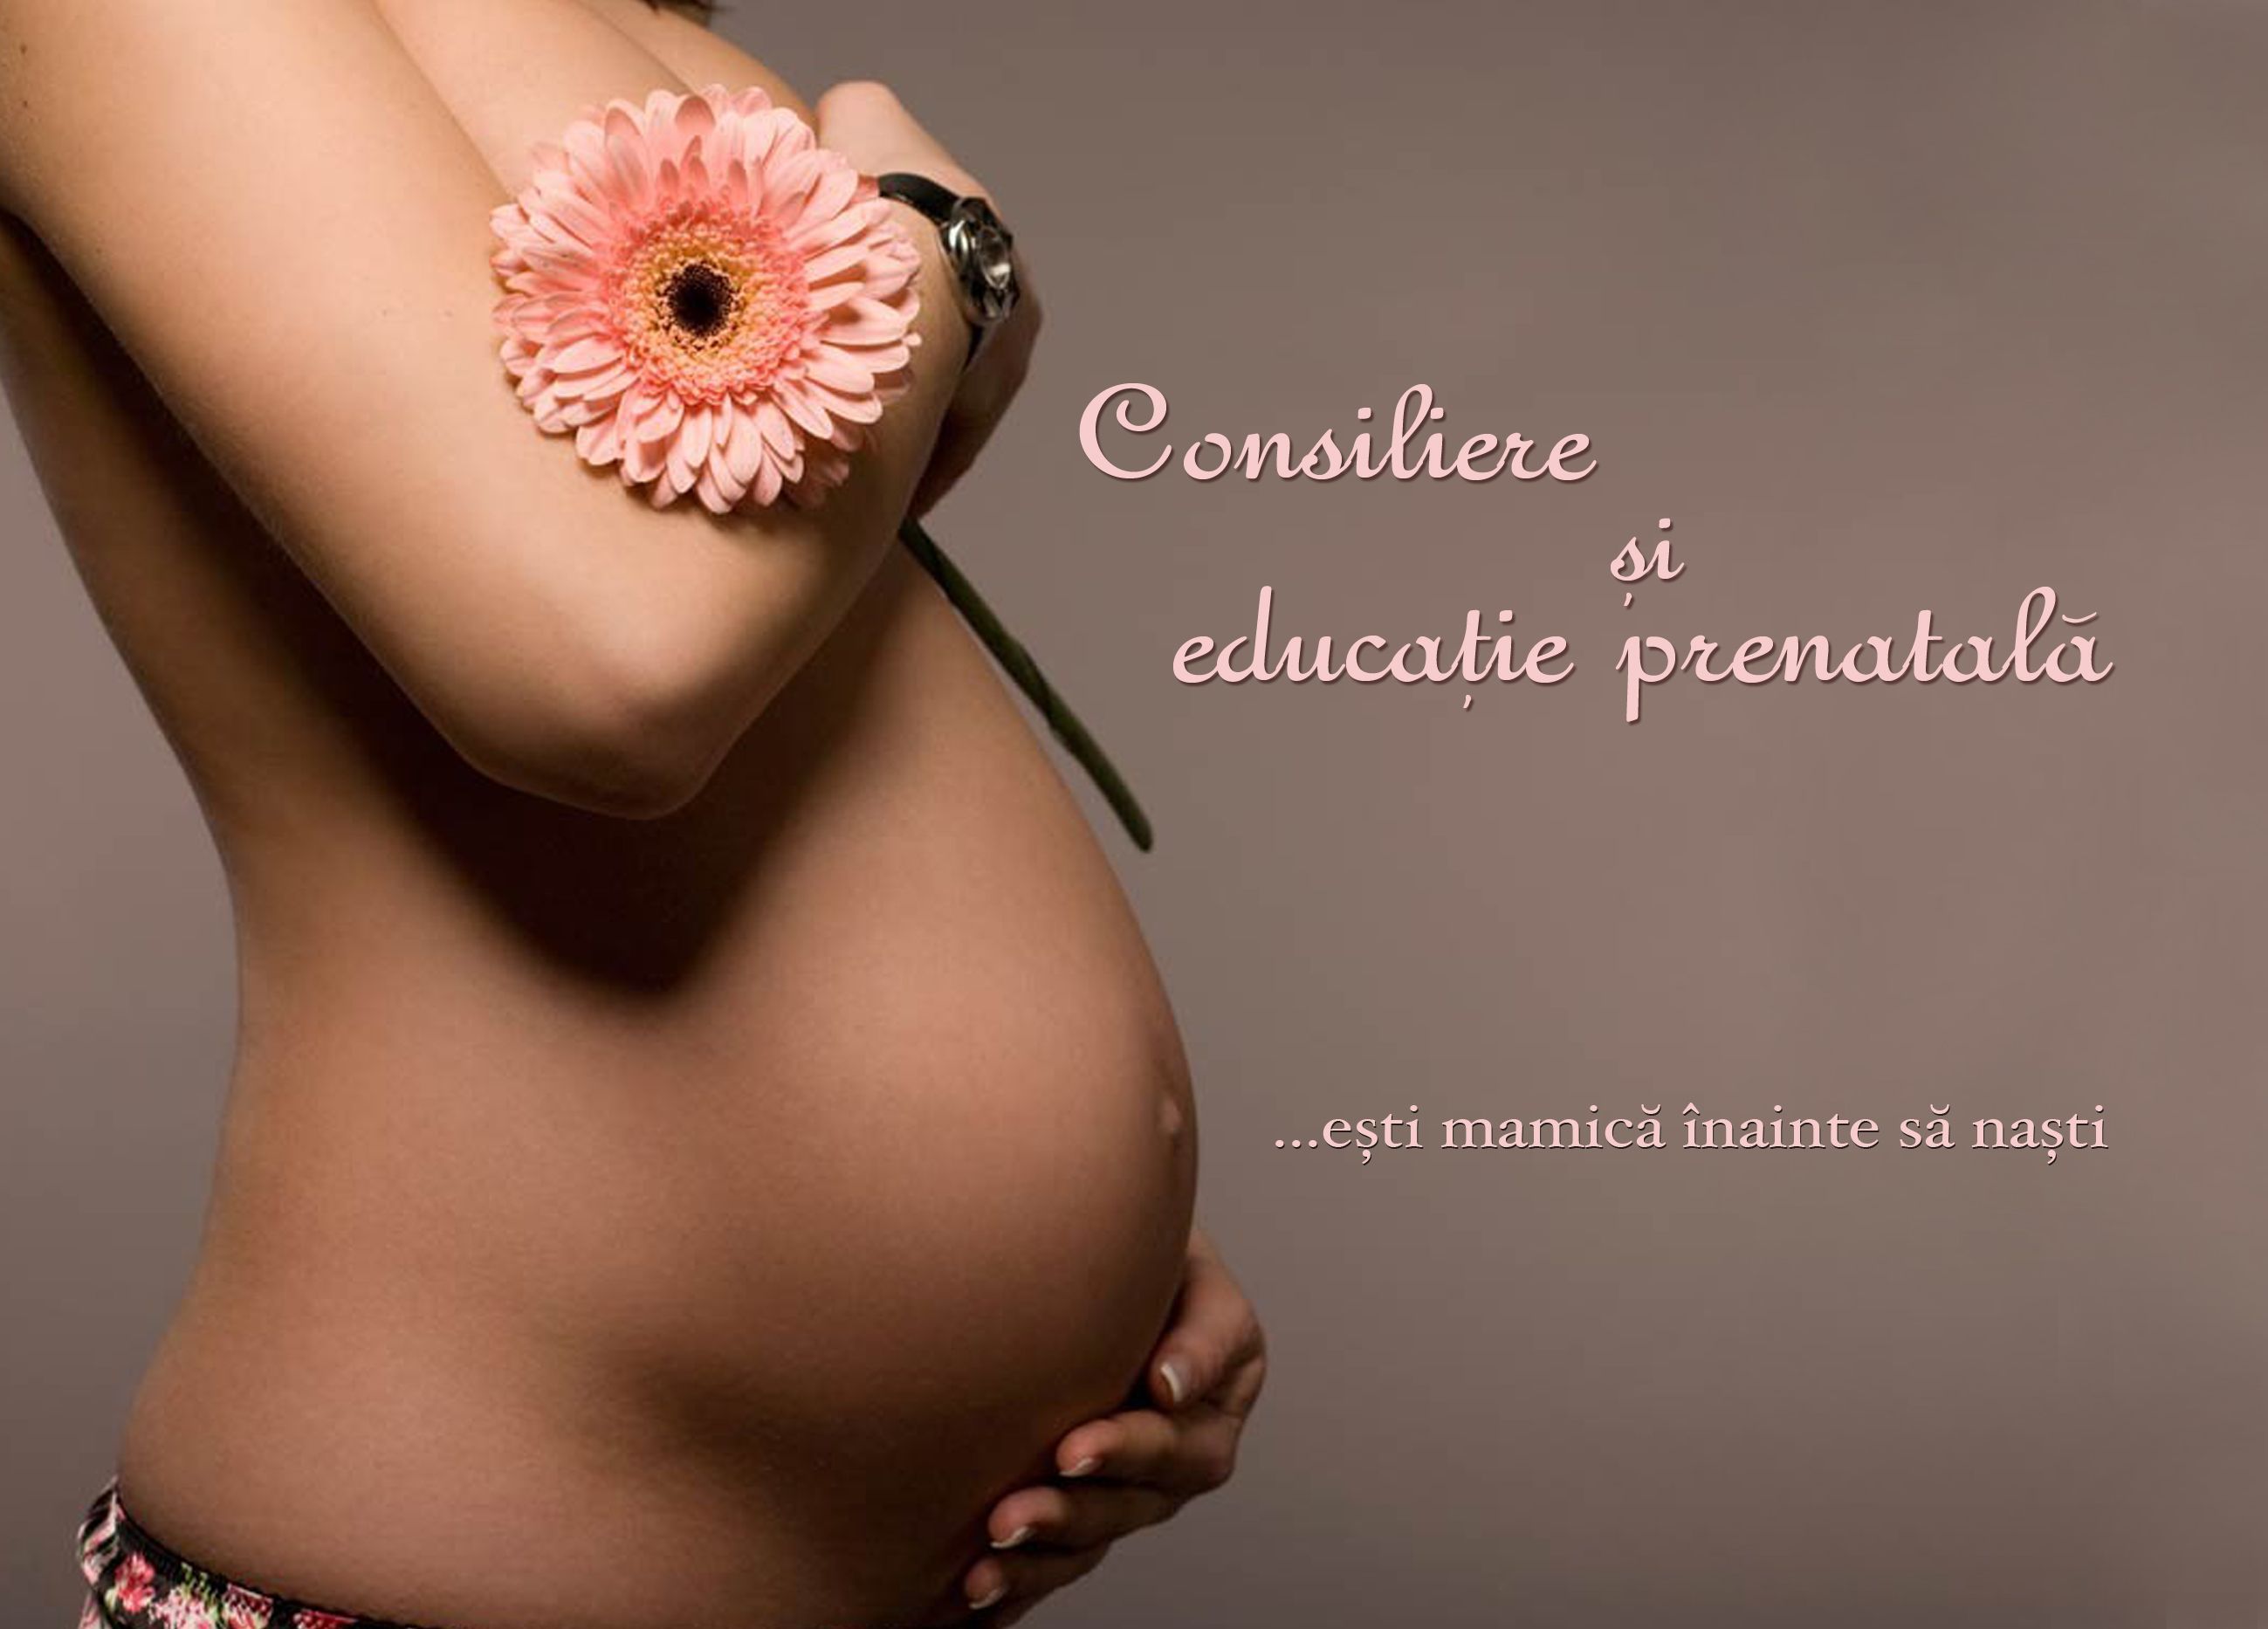 Цвет сосков на раннем сроке. Красивые беременные. Красивая беременна яженшина. Беременный живот.